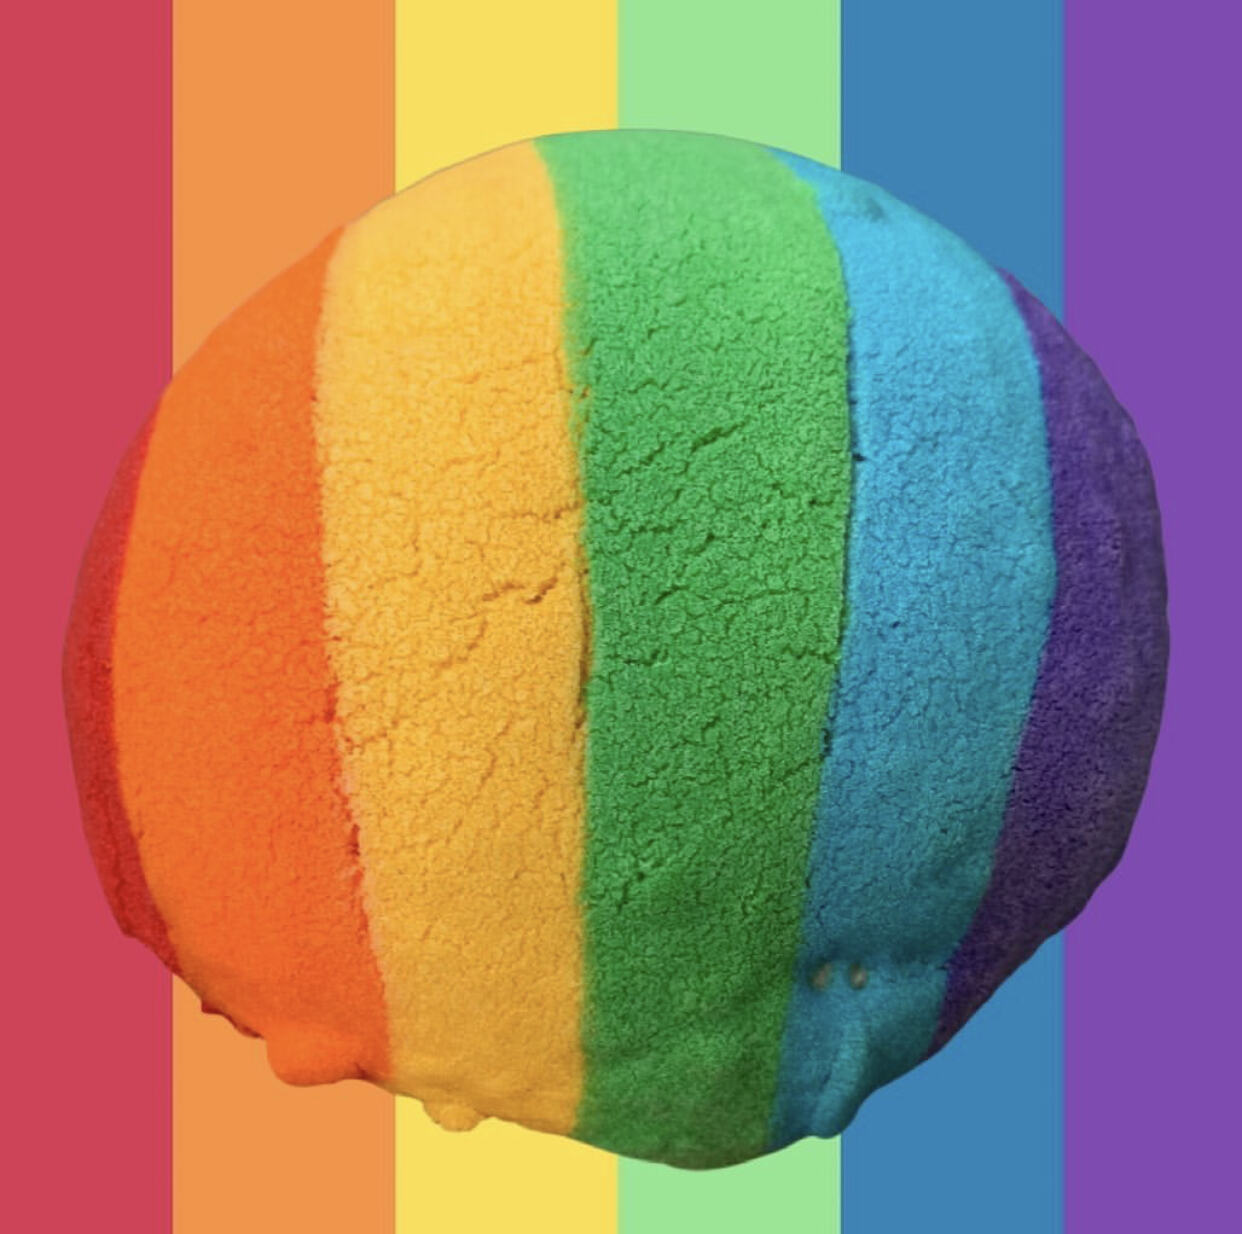 Comida para celebrar el mes del orgullo LGBT+ como se merece 2